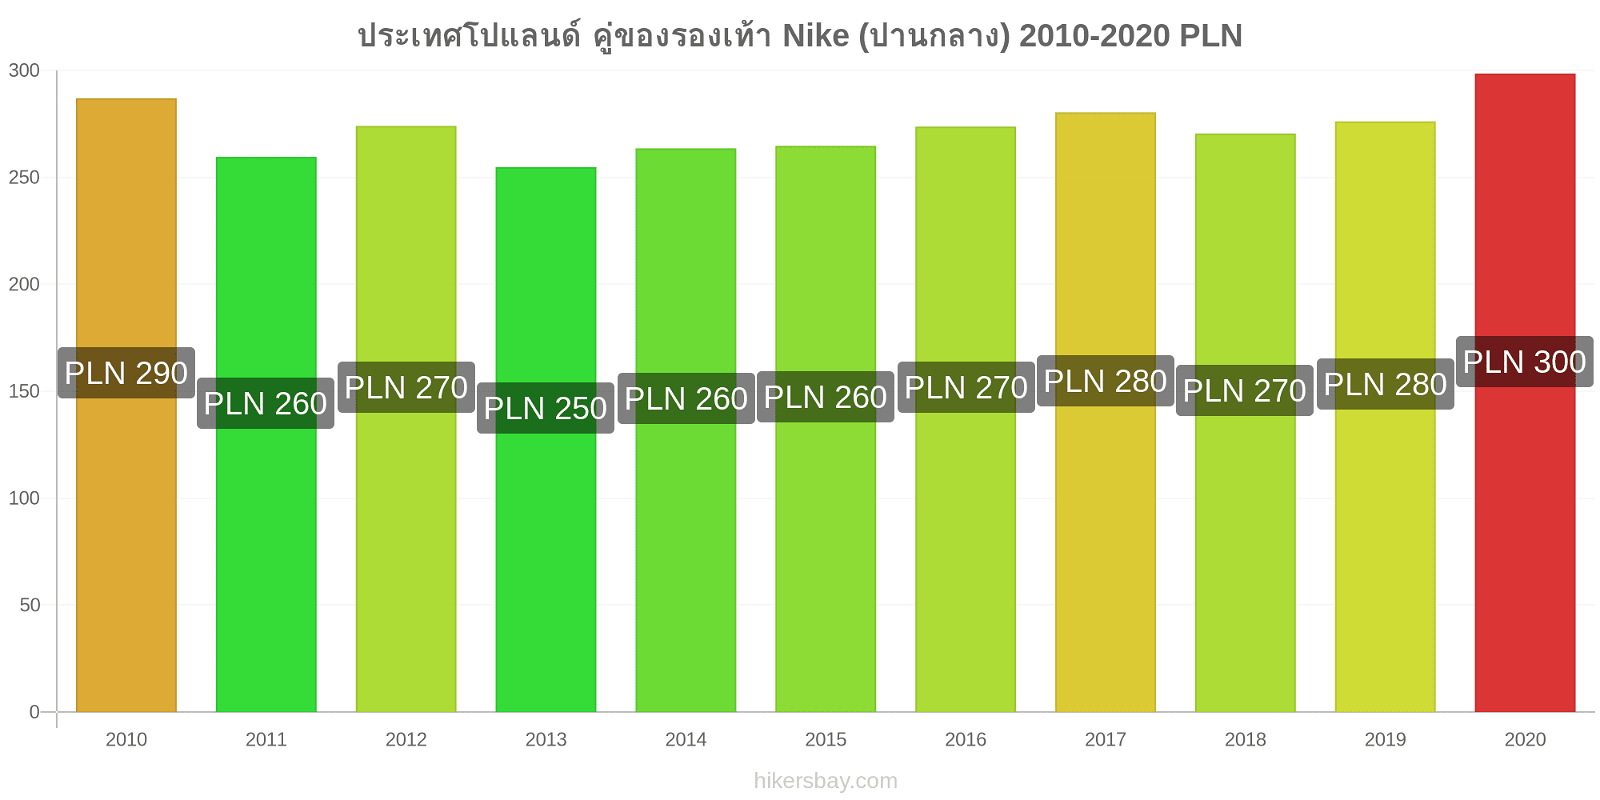 ประเทศโปแลนด์ การเปลี่ยนแปลงราคา คู่ของรองเท้า Nike (ปานกลาง) hikersbay.com